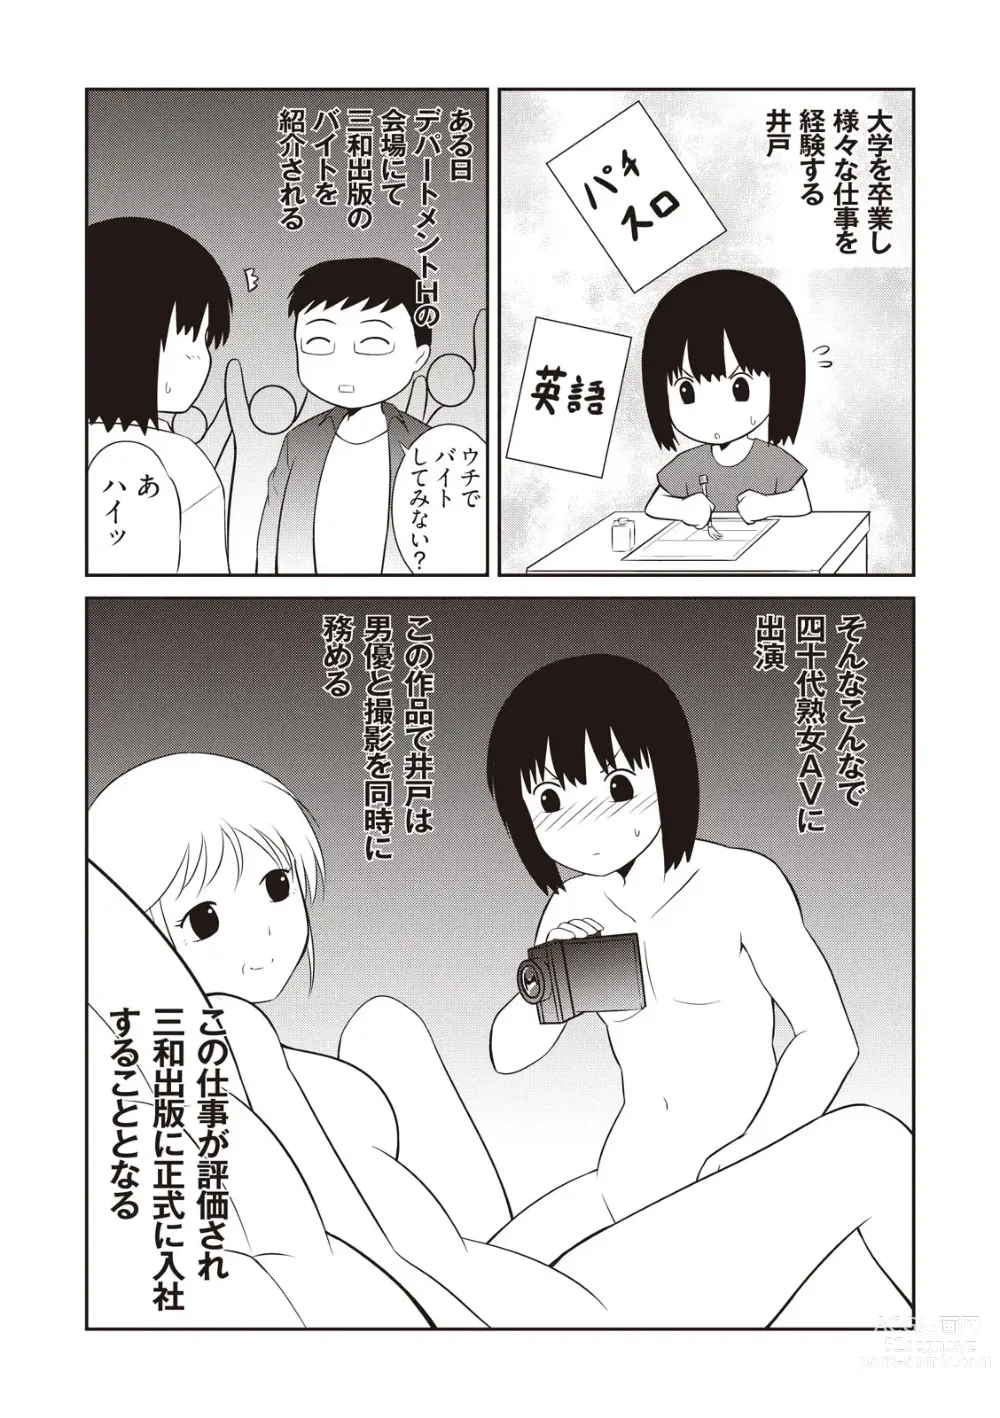 Page 21 of manga Manga de Furikaeru Otokonoko 10-nenshi